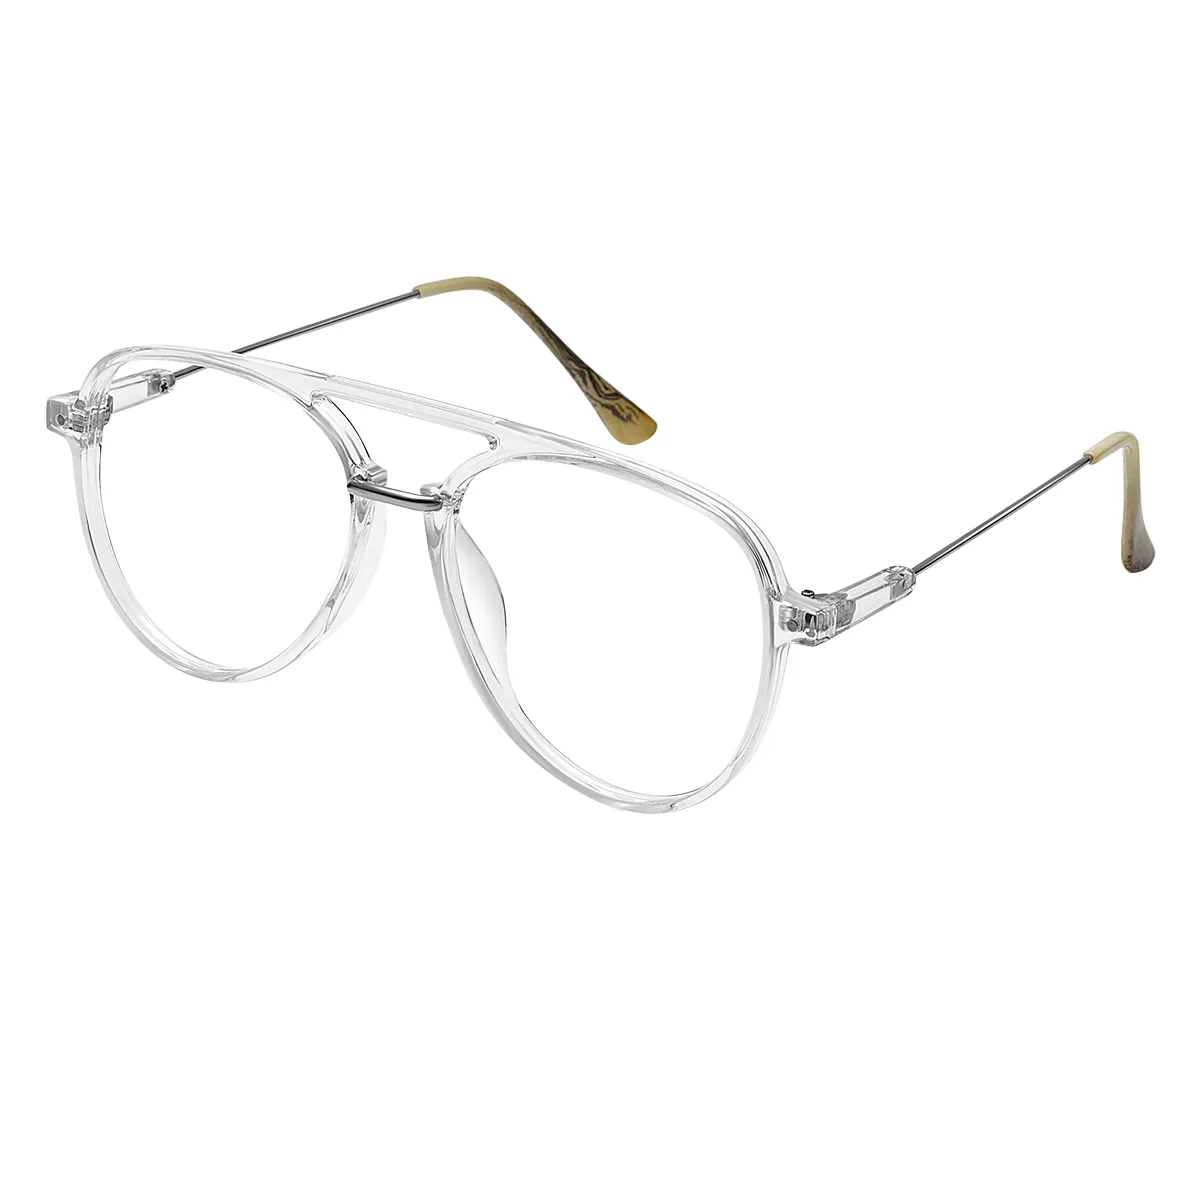 Nichols - Aviator  Glasses for Men & Women